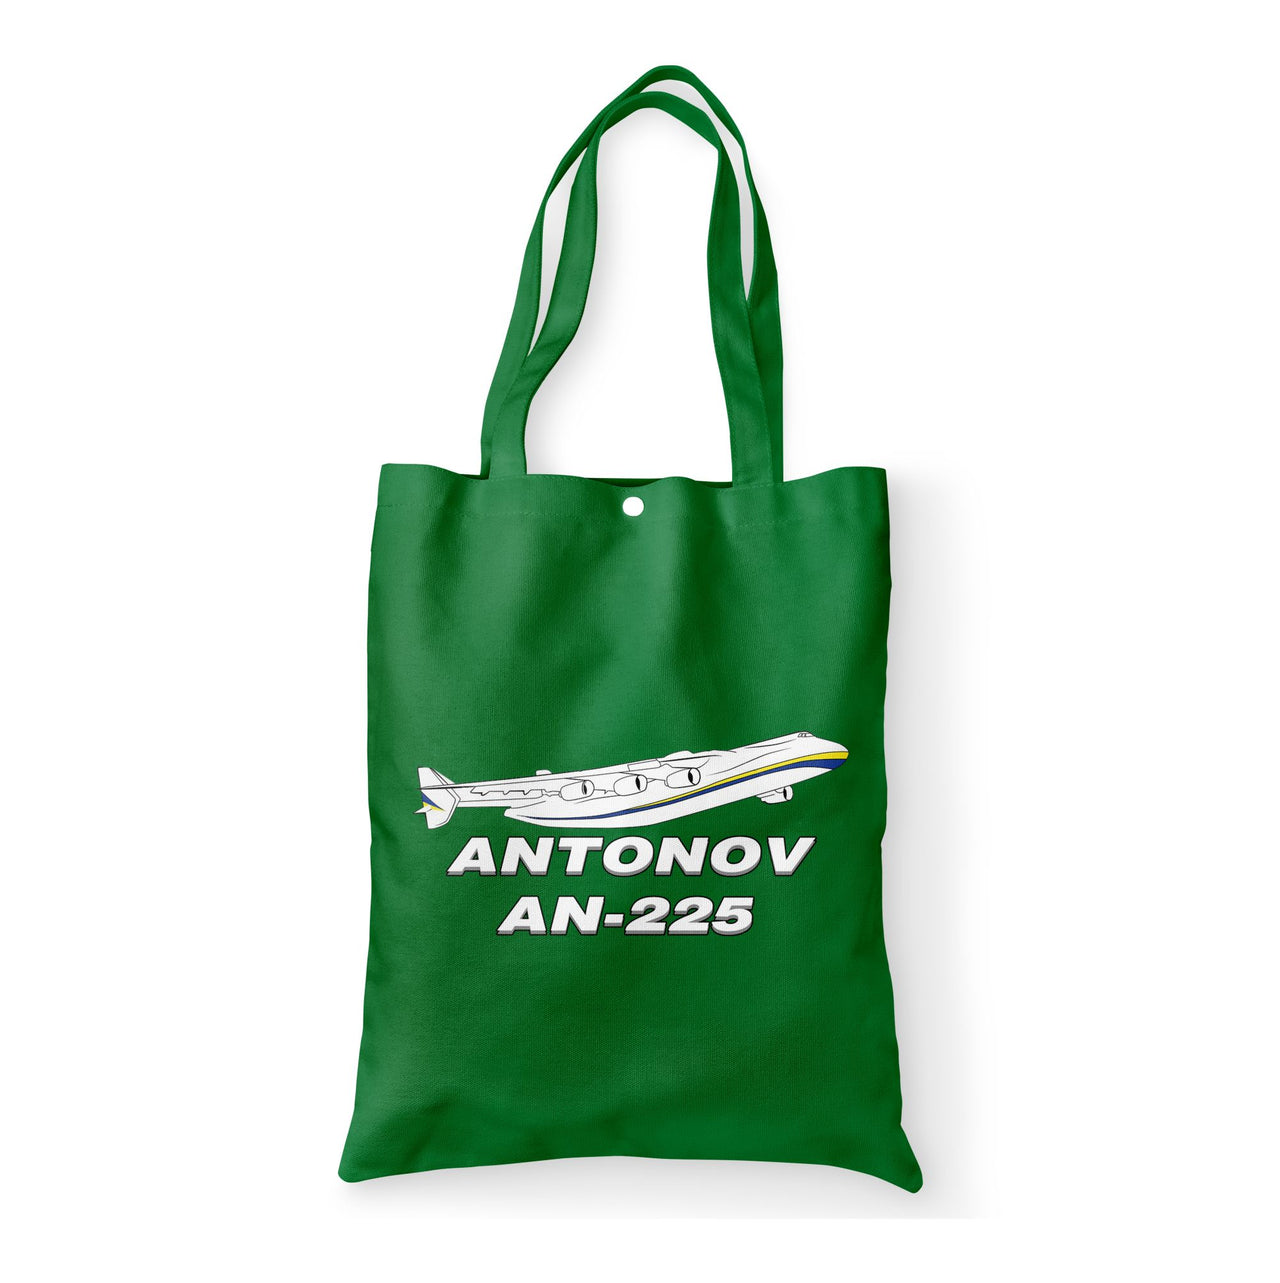 Antonov AN-225 (27) Designed Tote Bags